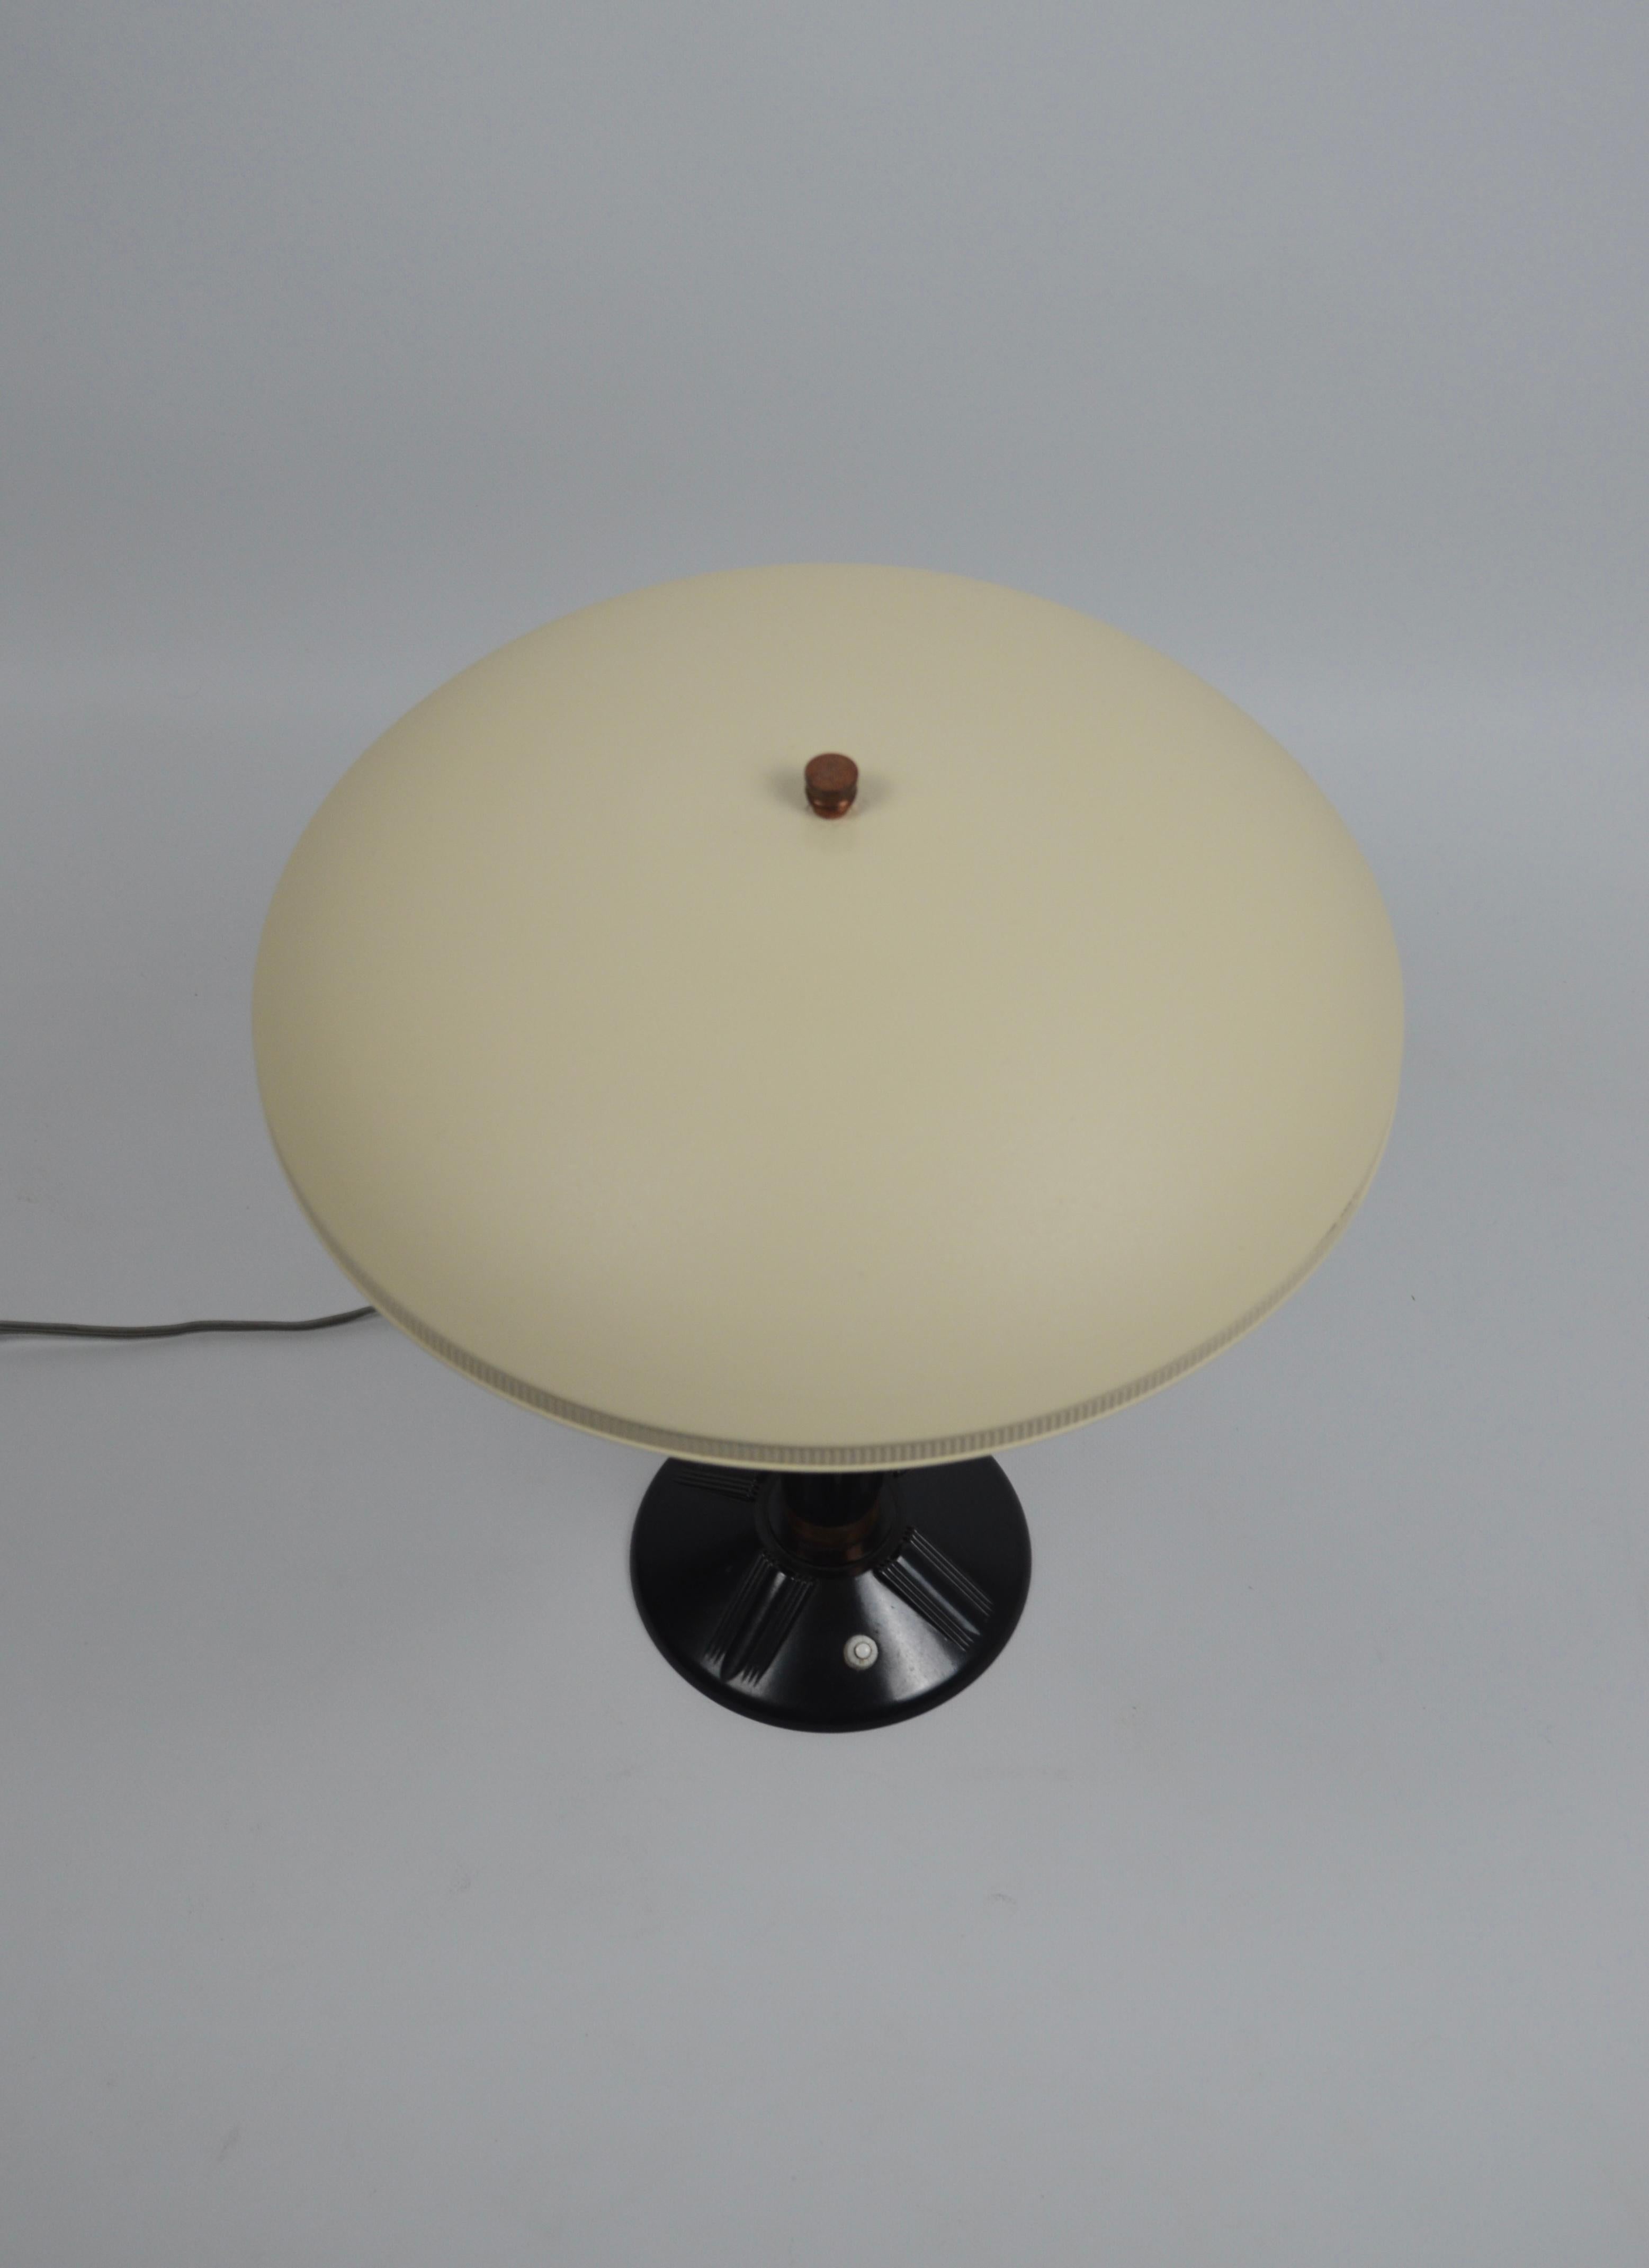 French Bakelite lamp, model 320, Jumo brand, France, 1940s For Sale